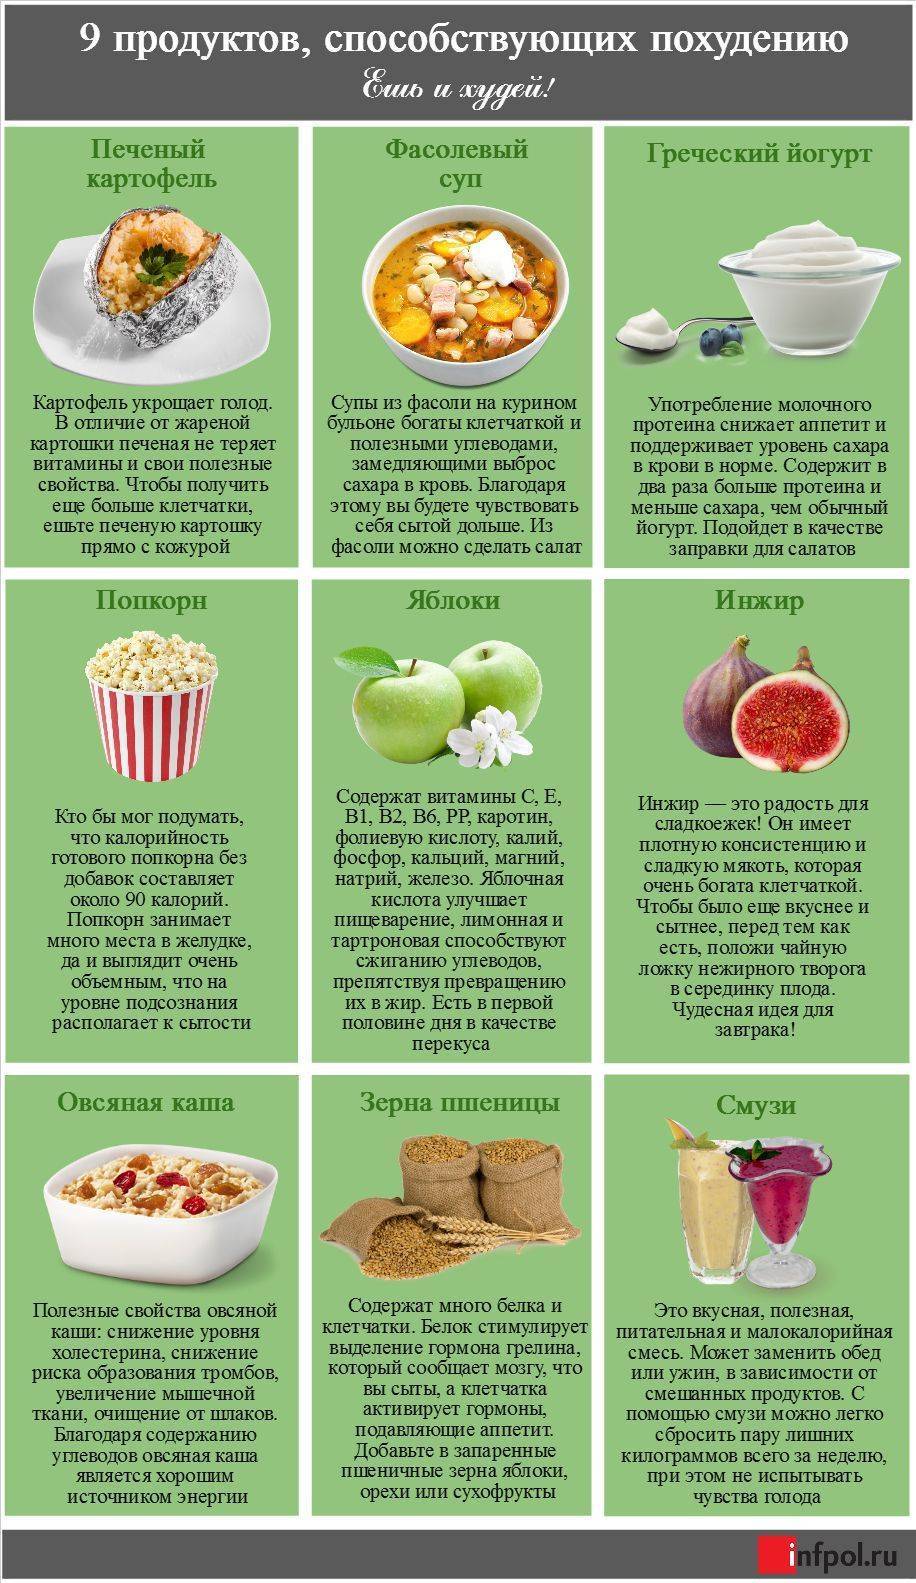 Что можно есть, когда худеешь: список разрешенных и запрещенных продуктов и напитков